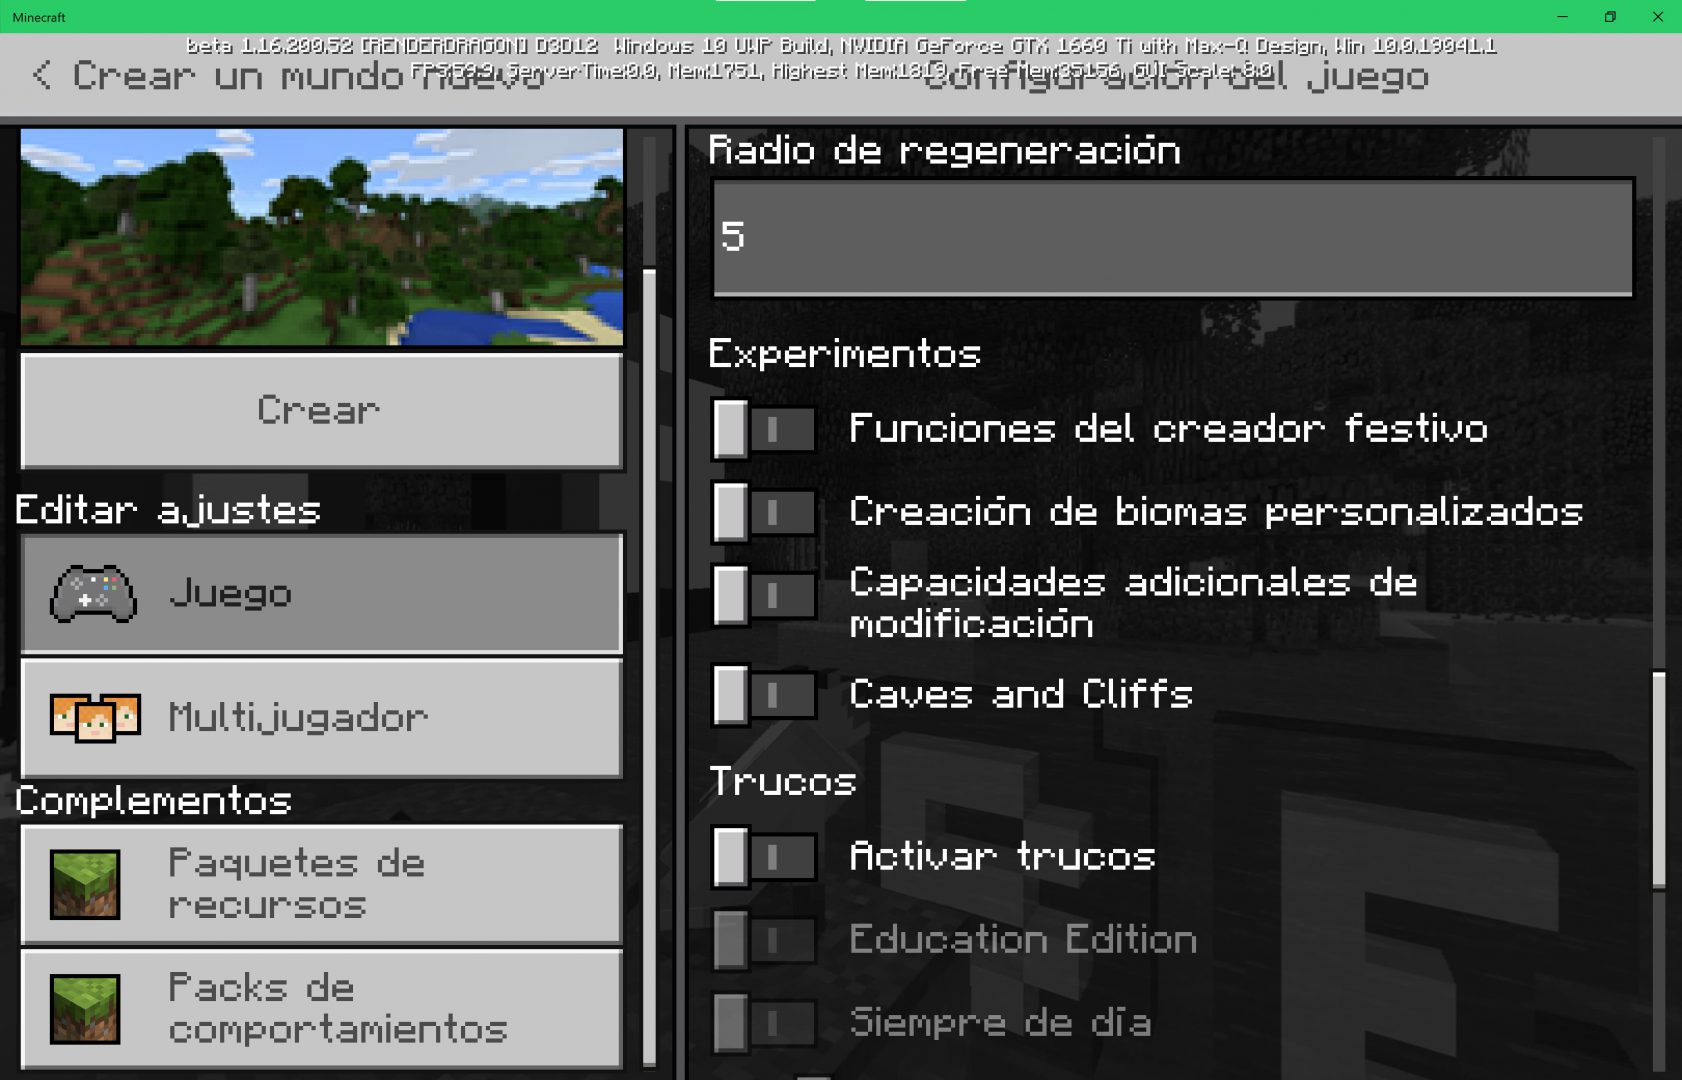 Minecraft activar cuevas y acantiladosen las funciones experimentales